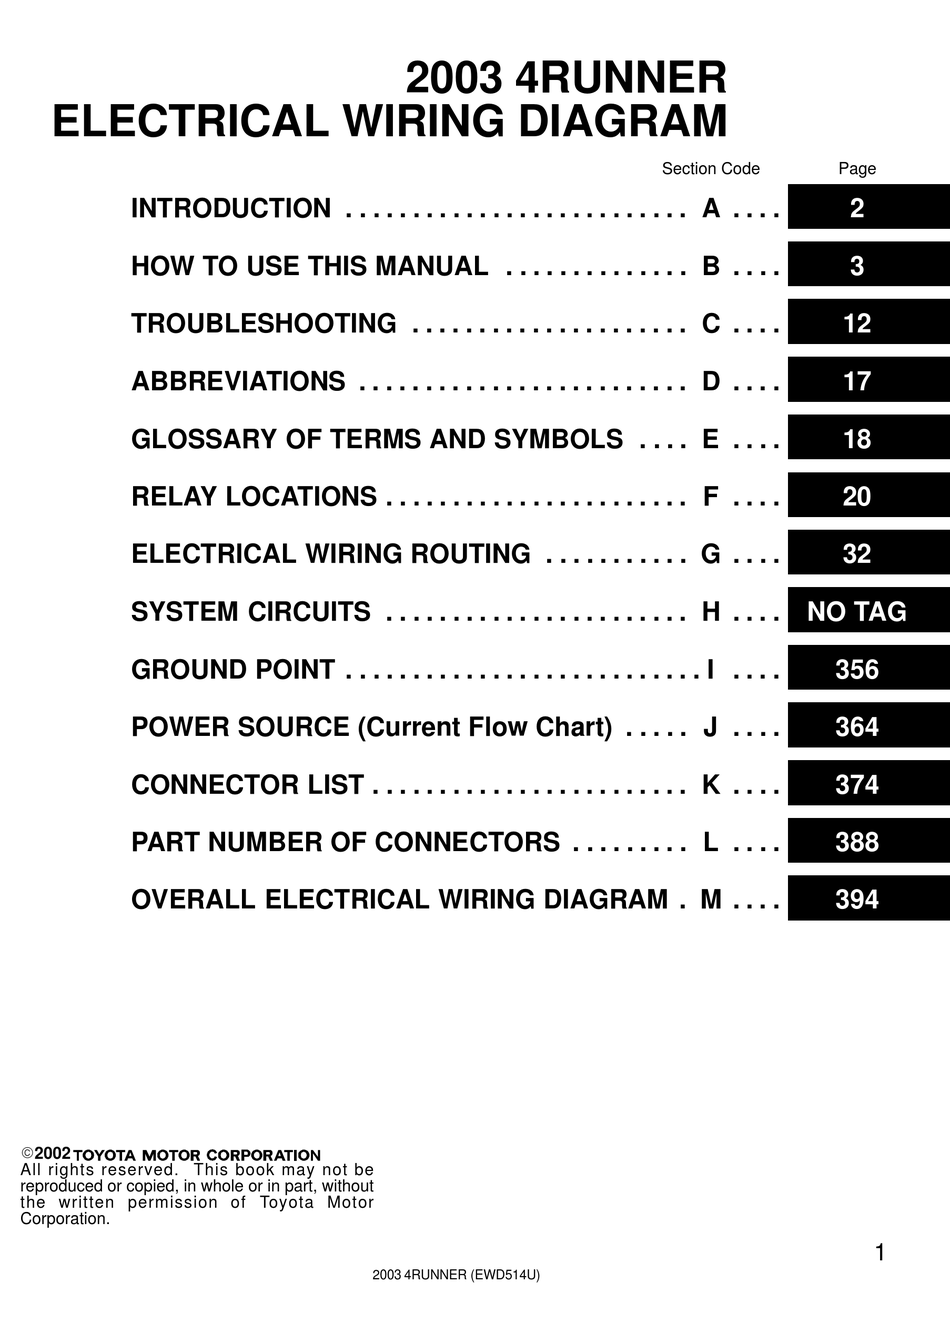 Toyota 4runner 2003 Electrical Wiring Diagram Pdf Download Manualslib